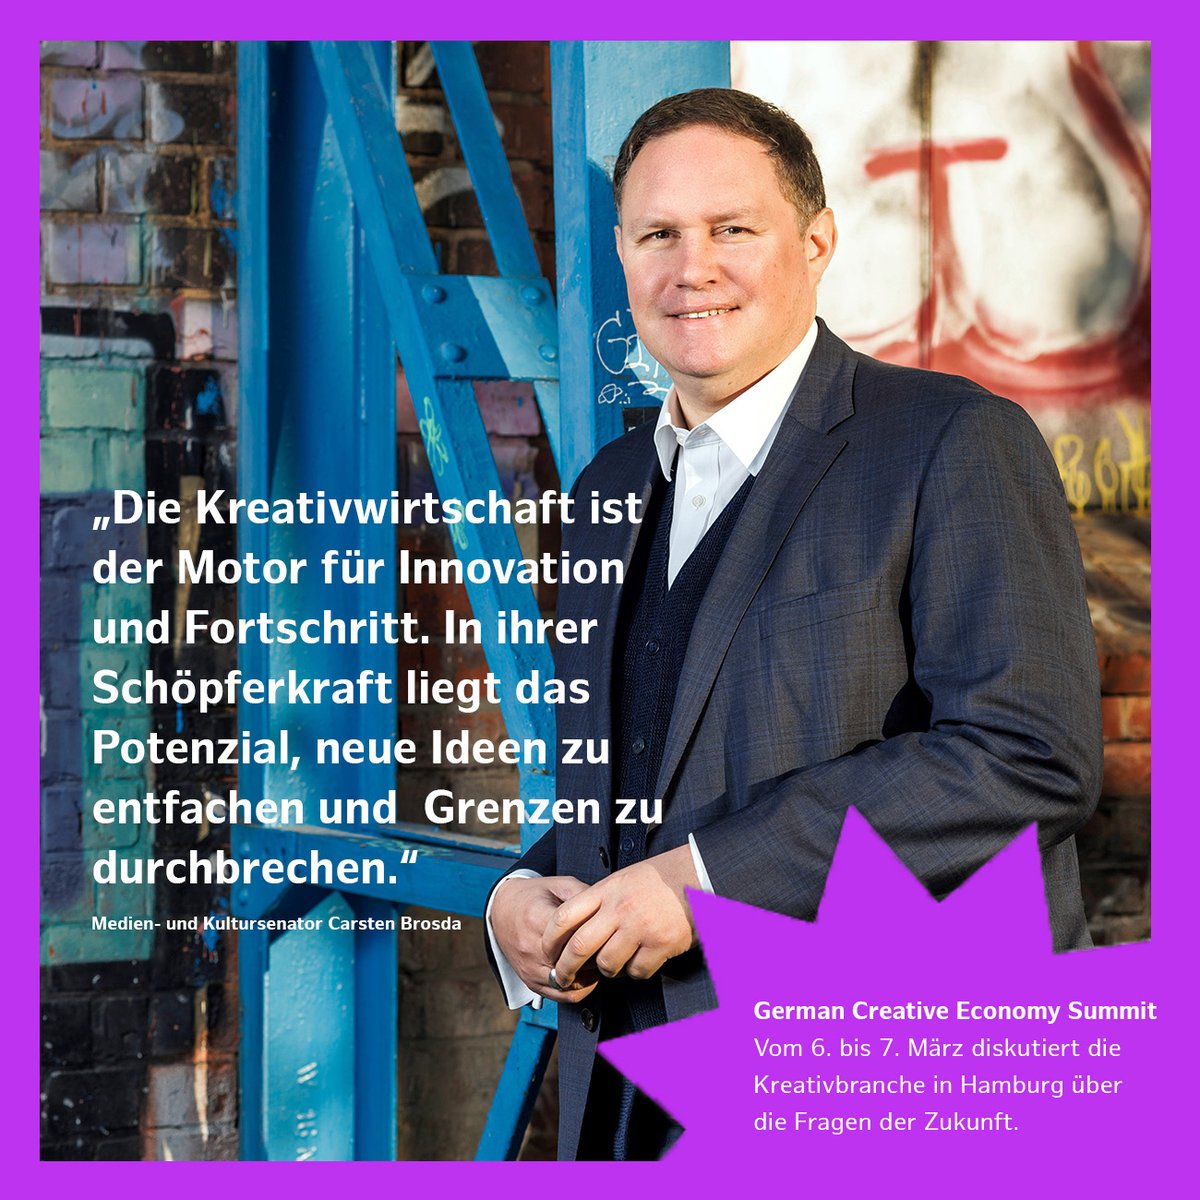 Nachhaltigkeit, Digitalisierung oder Inklusion – beim German Creative Economy Summit diskutiert die Kreativwirtschaft am 6. & 7. März in Hamburg, u.a. mit @CarstenBrosda, über die zentralen gesellschaftlichen Themen. Bring' deine Ideen ein! german-creative-economy-summit.de #GCES2024